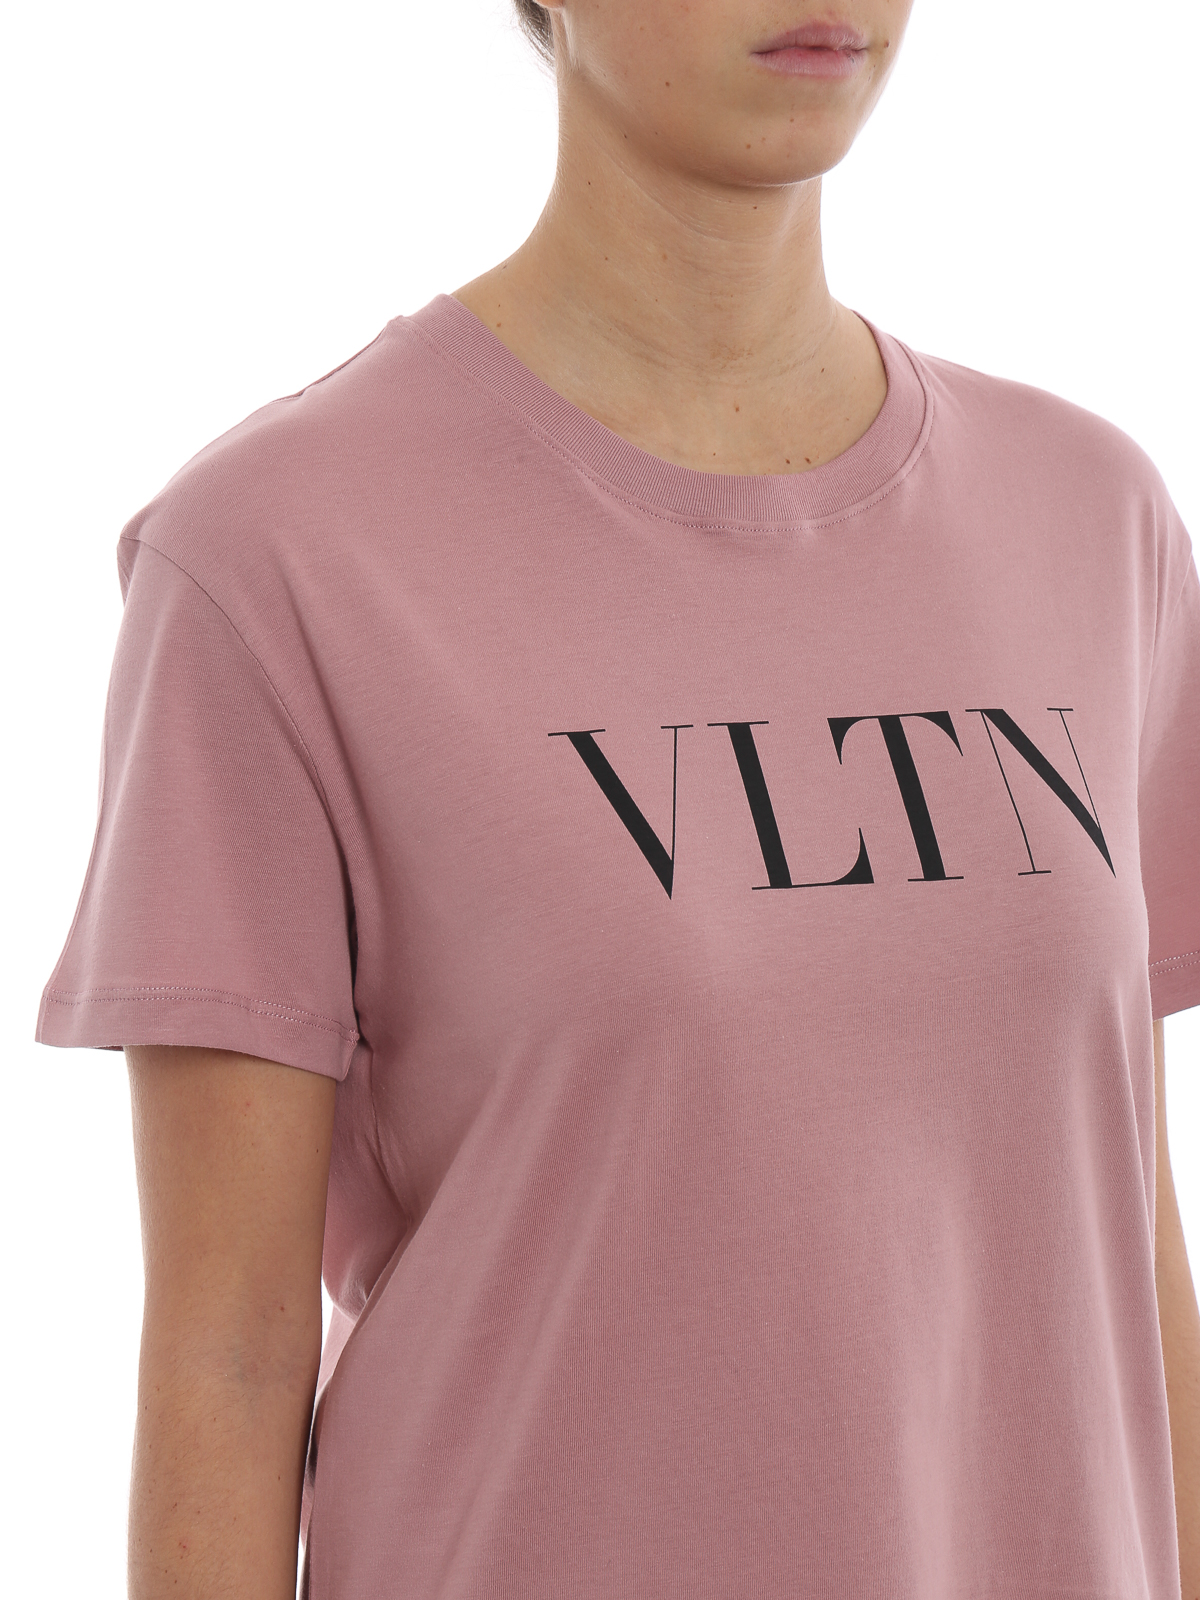 Tシャツ Valentino - Tシャツ - Vltn - RB3MG07D3V6S86 | iKRIX.com